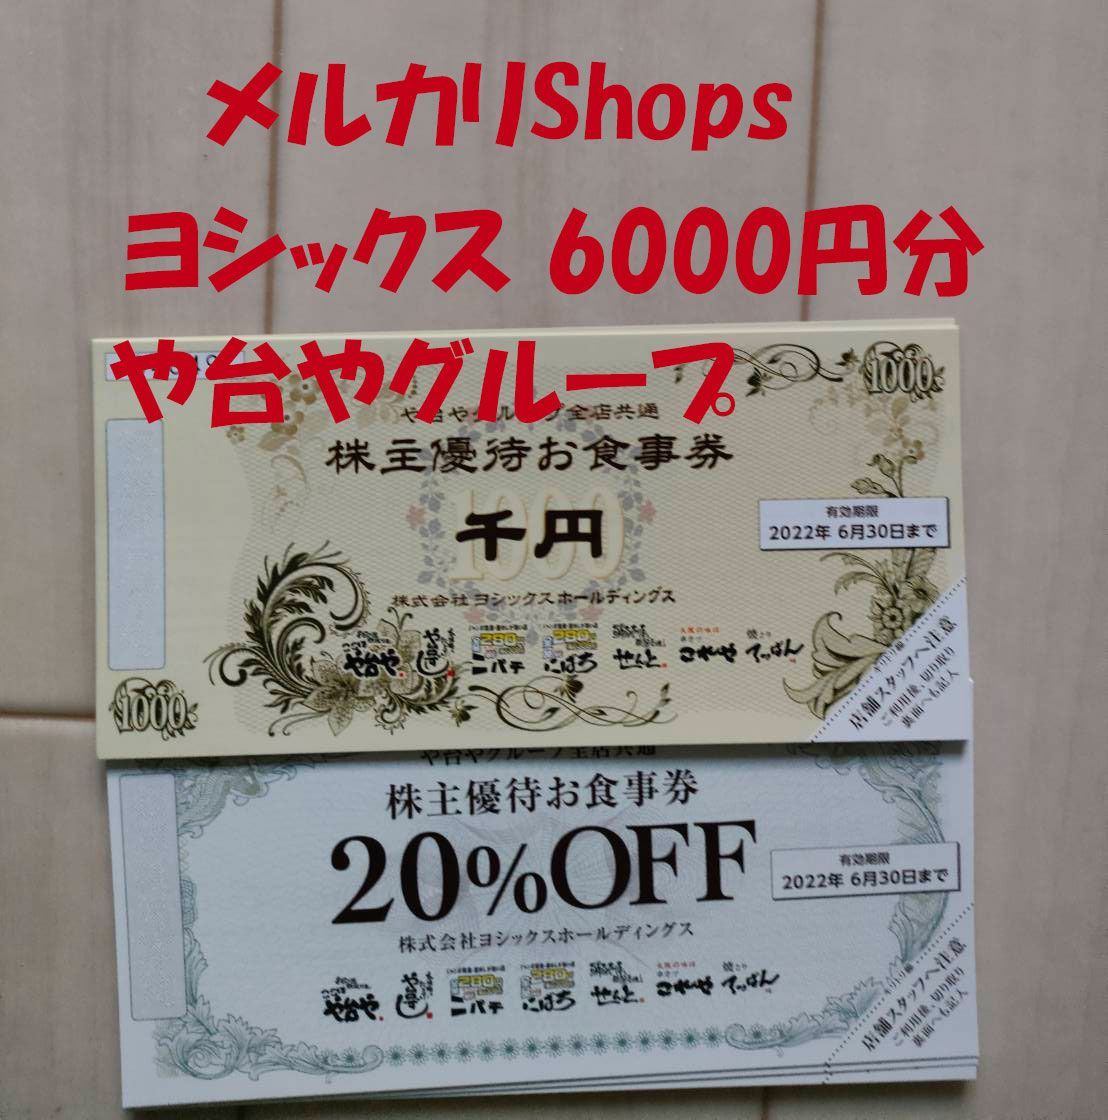 ヨシックス　株主優待　6000円分と20%OFF券20枚